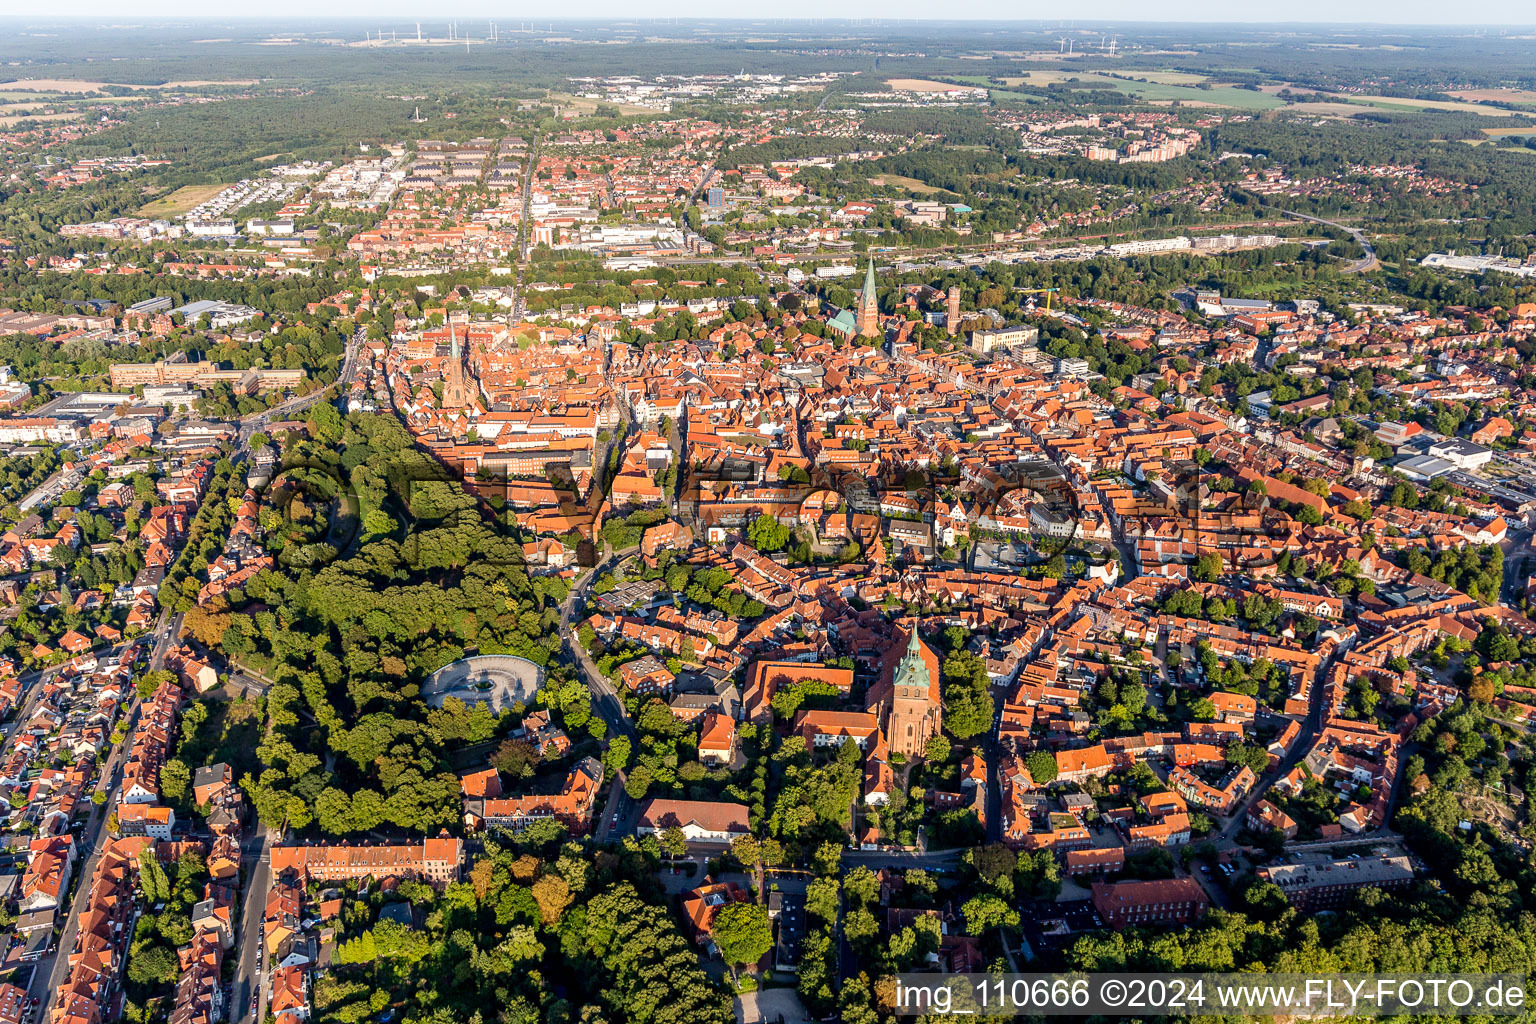 Altstadtbereich und Innenstadtzentrum in Lüneburg im Bundesland Niedersachsen, Deutschland aus der Drohnenperspektive